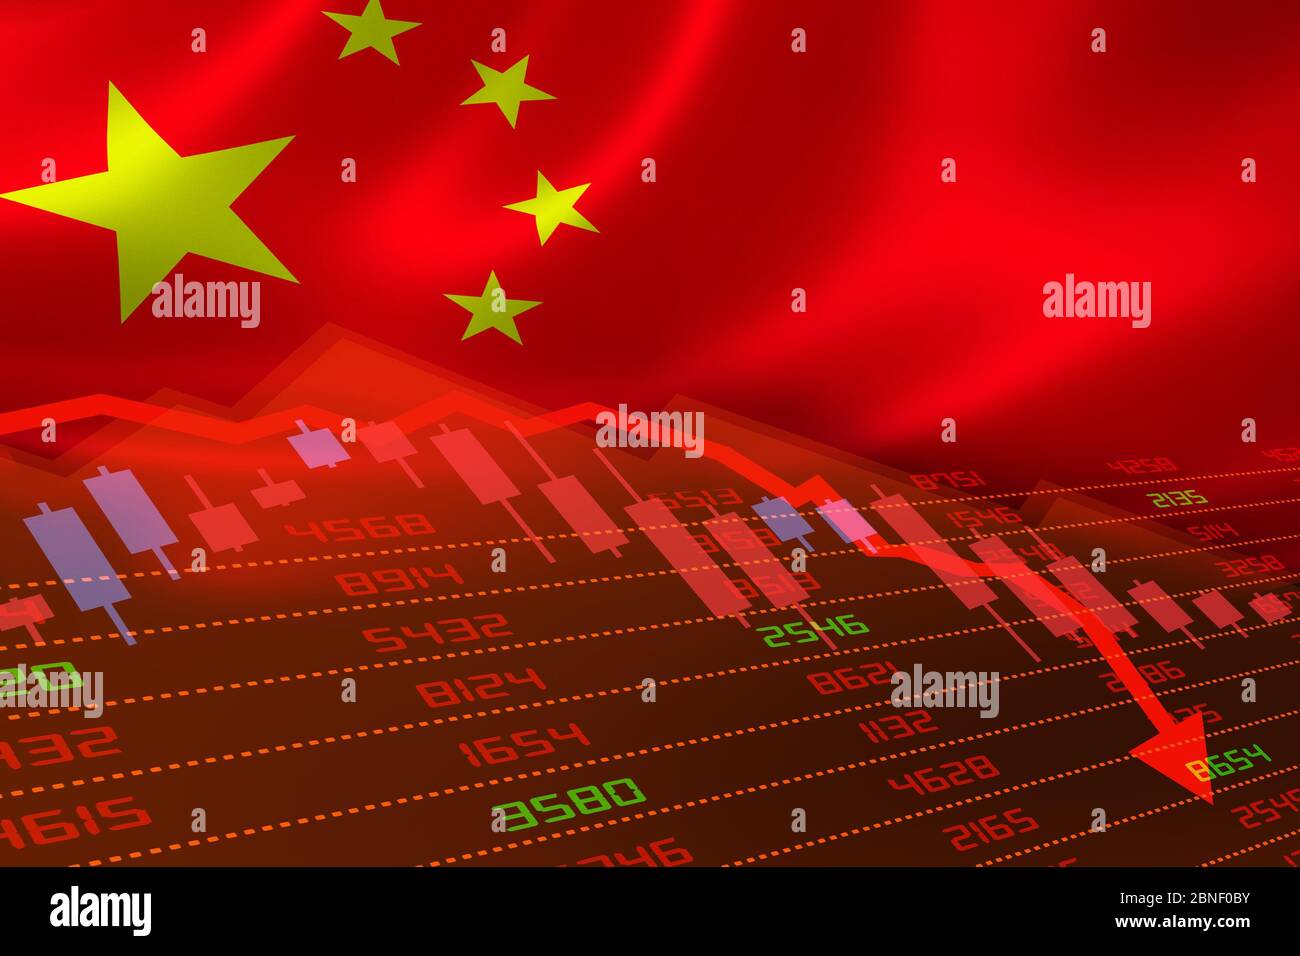 La Chine est en baisse avec la Bourse en baisse et en territoire rouge négatif. Crise des marchés financiers et financiers Banque D'Images